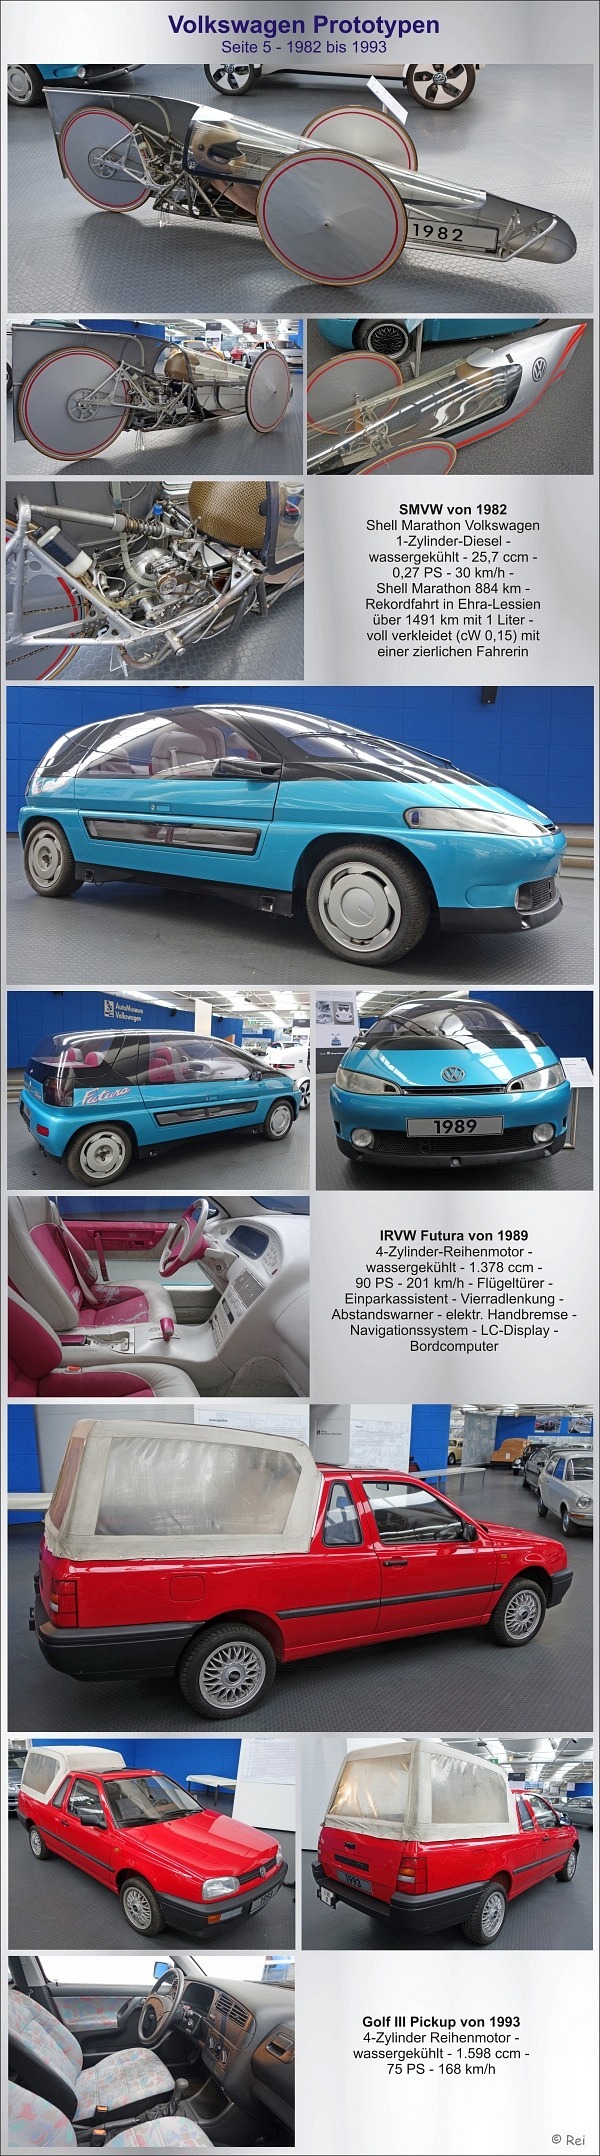 VW Prototypen - Seite 5 - 1982-1993